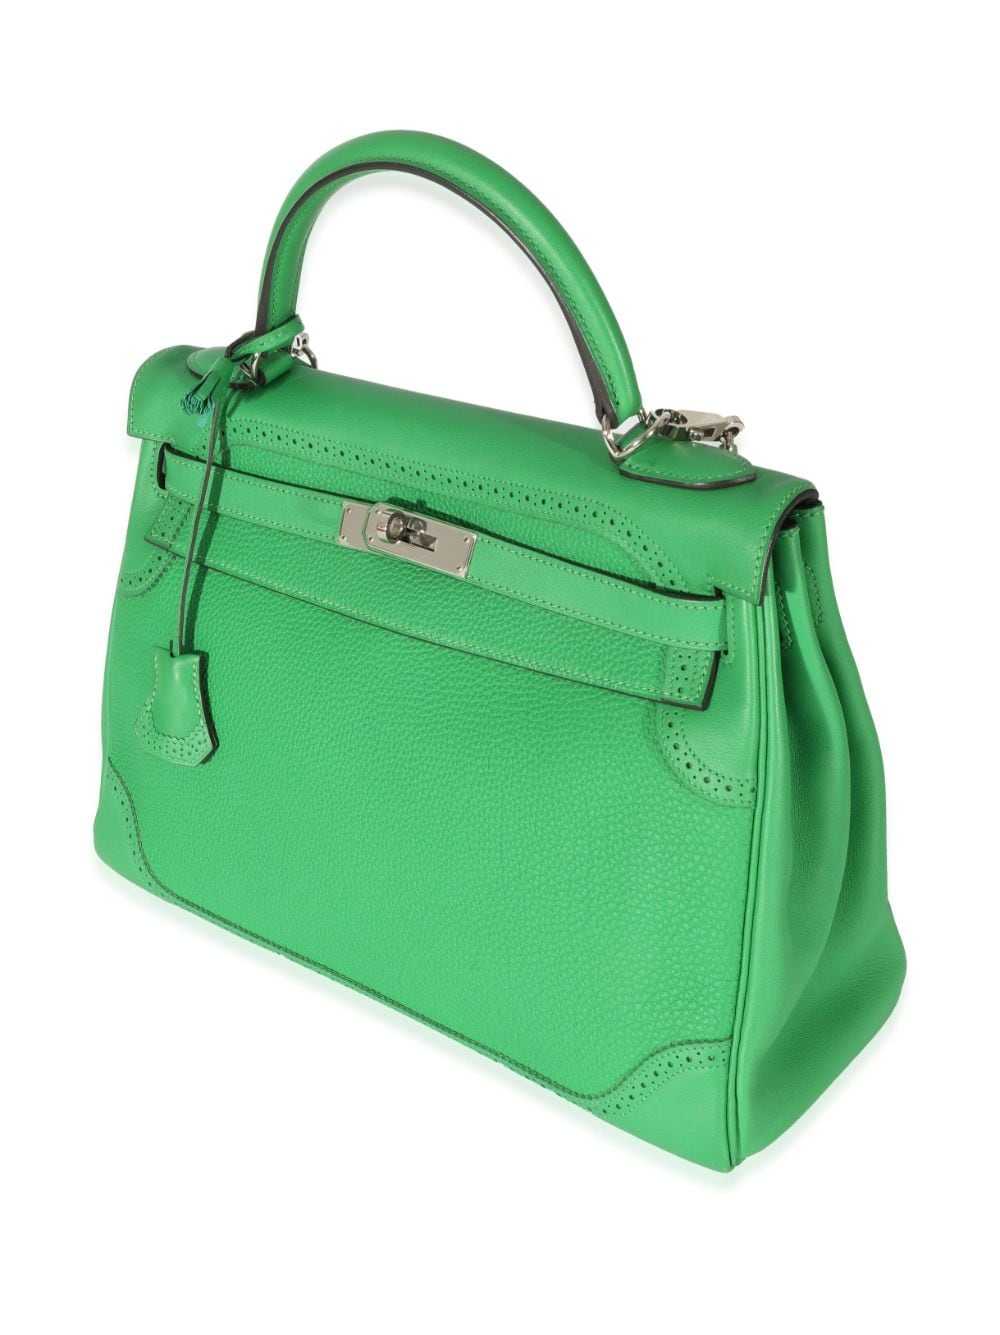 Vintage Hermes Kelly Bag 32 Box Leather Tricolor Navy Green Wine Handbag  Straps